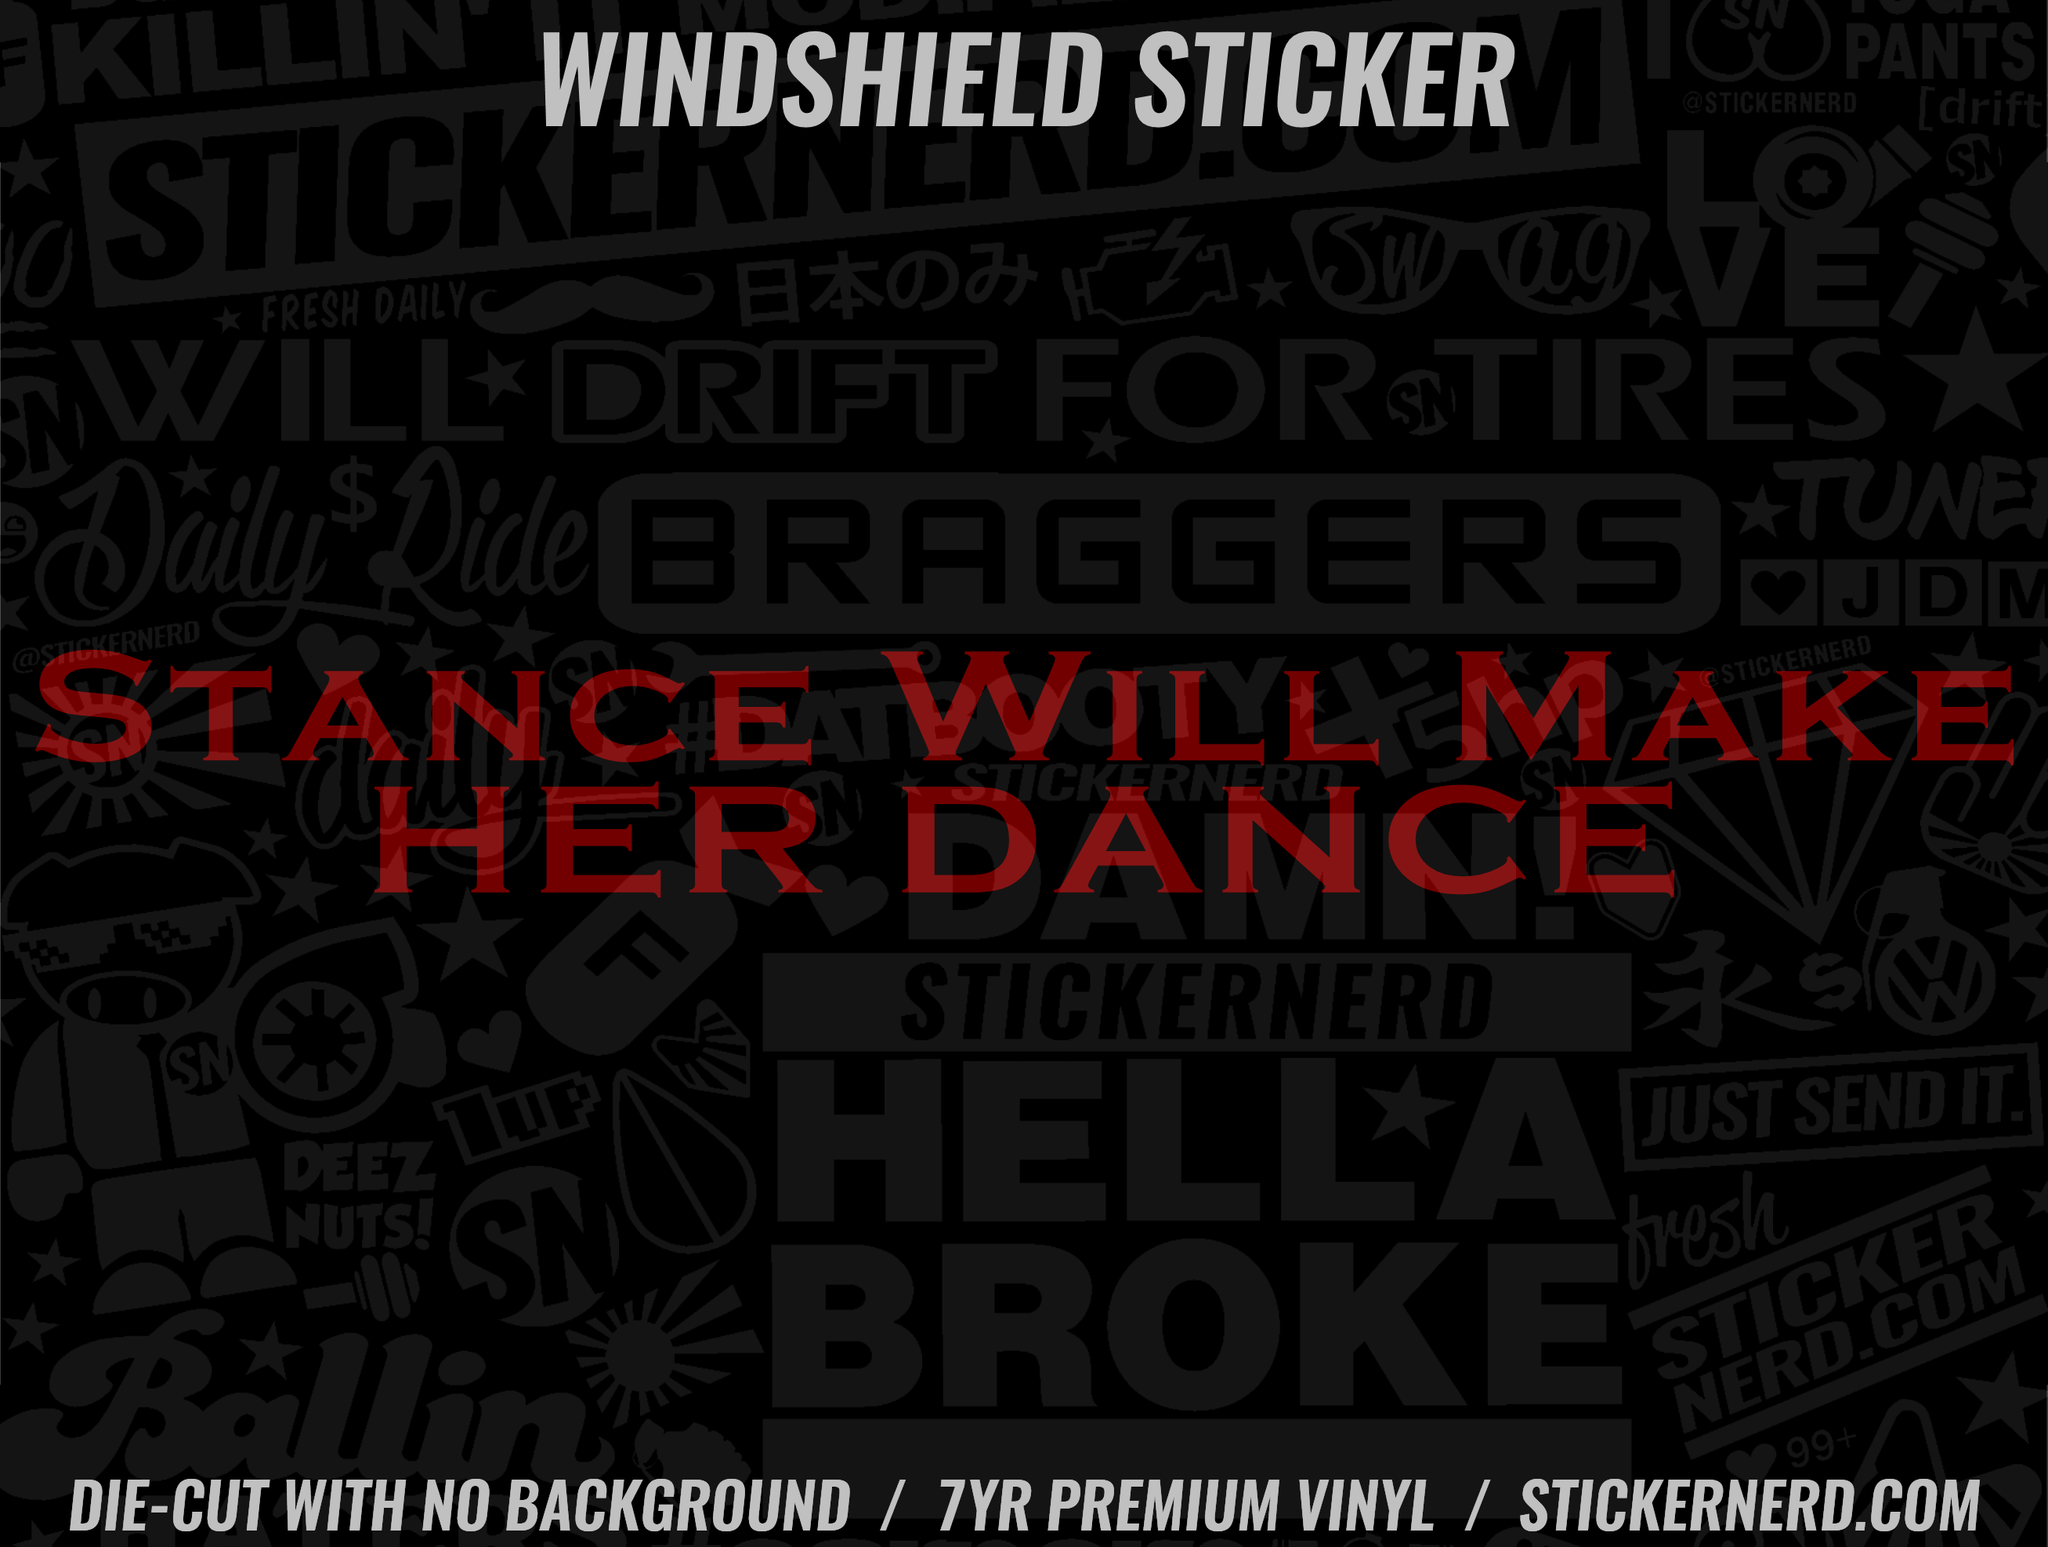 Stance Will Make Her Dance Windshield Sticker - Window Decal - STICKERNERD.COM